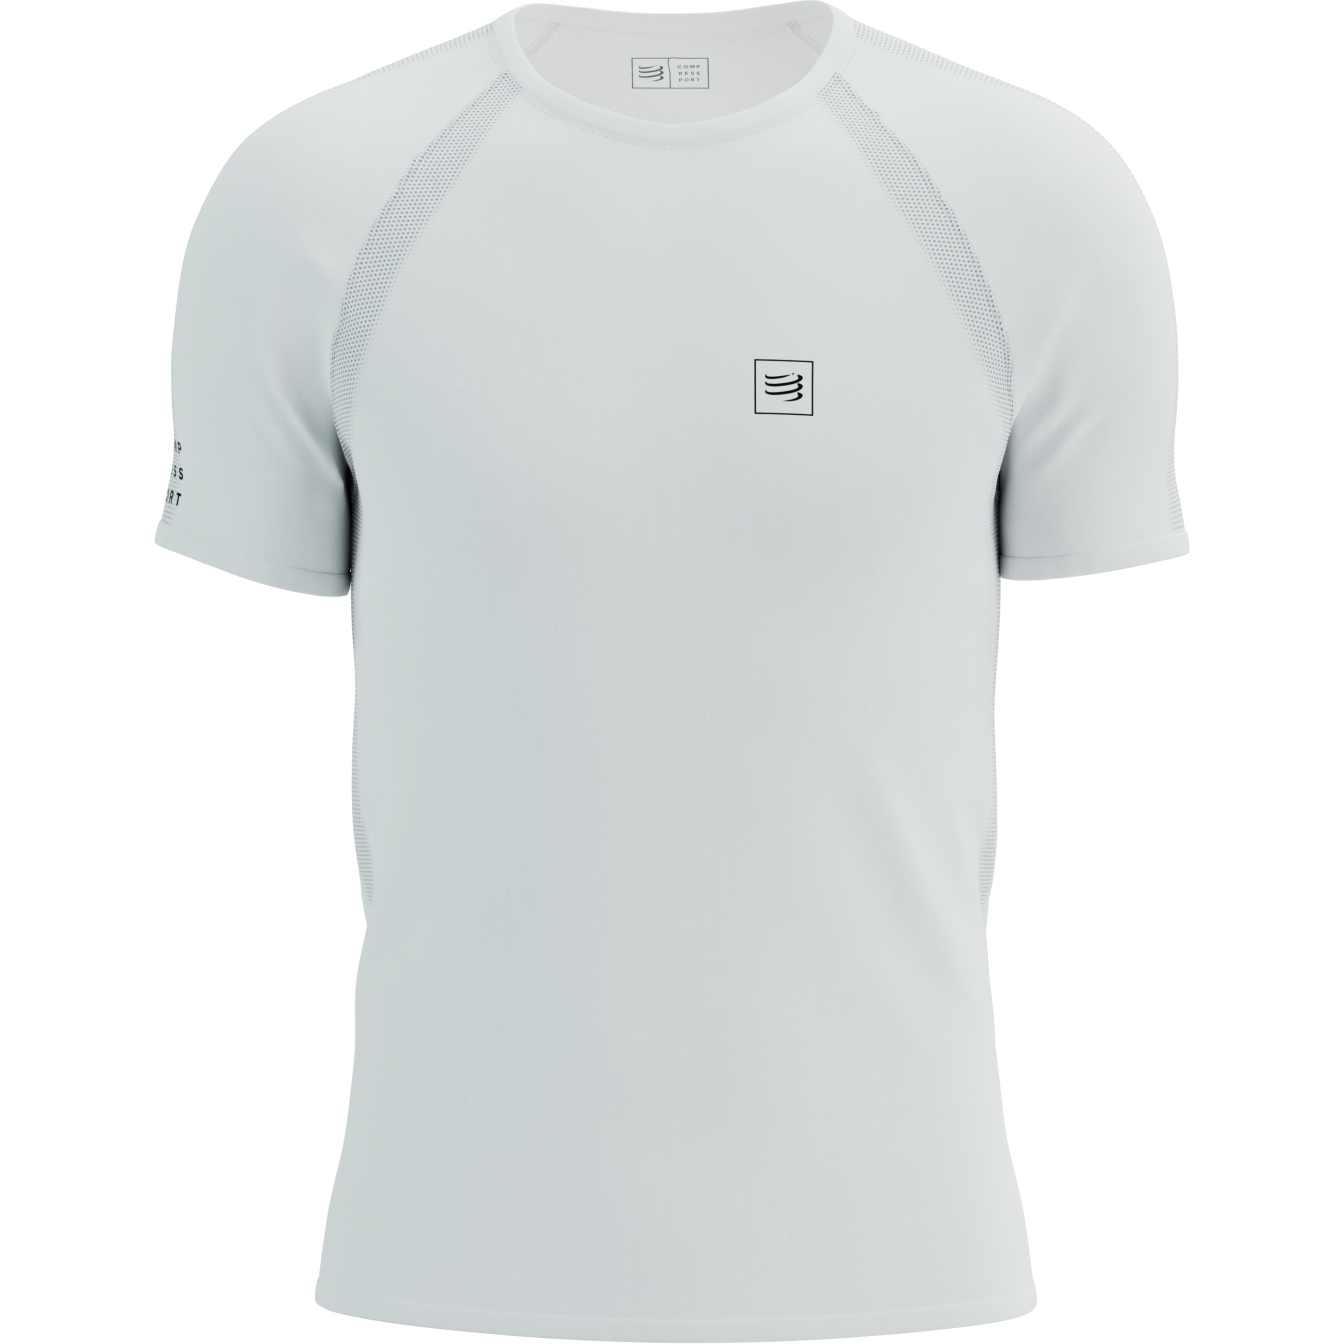 Produktbild von Compressport Training T-Shirt - weiß